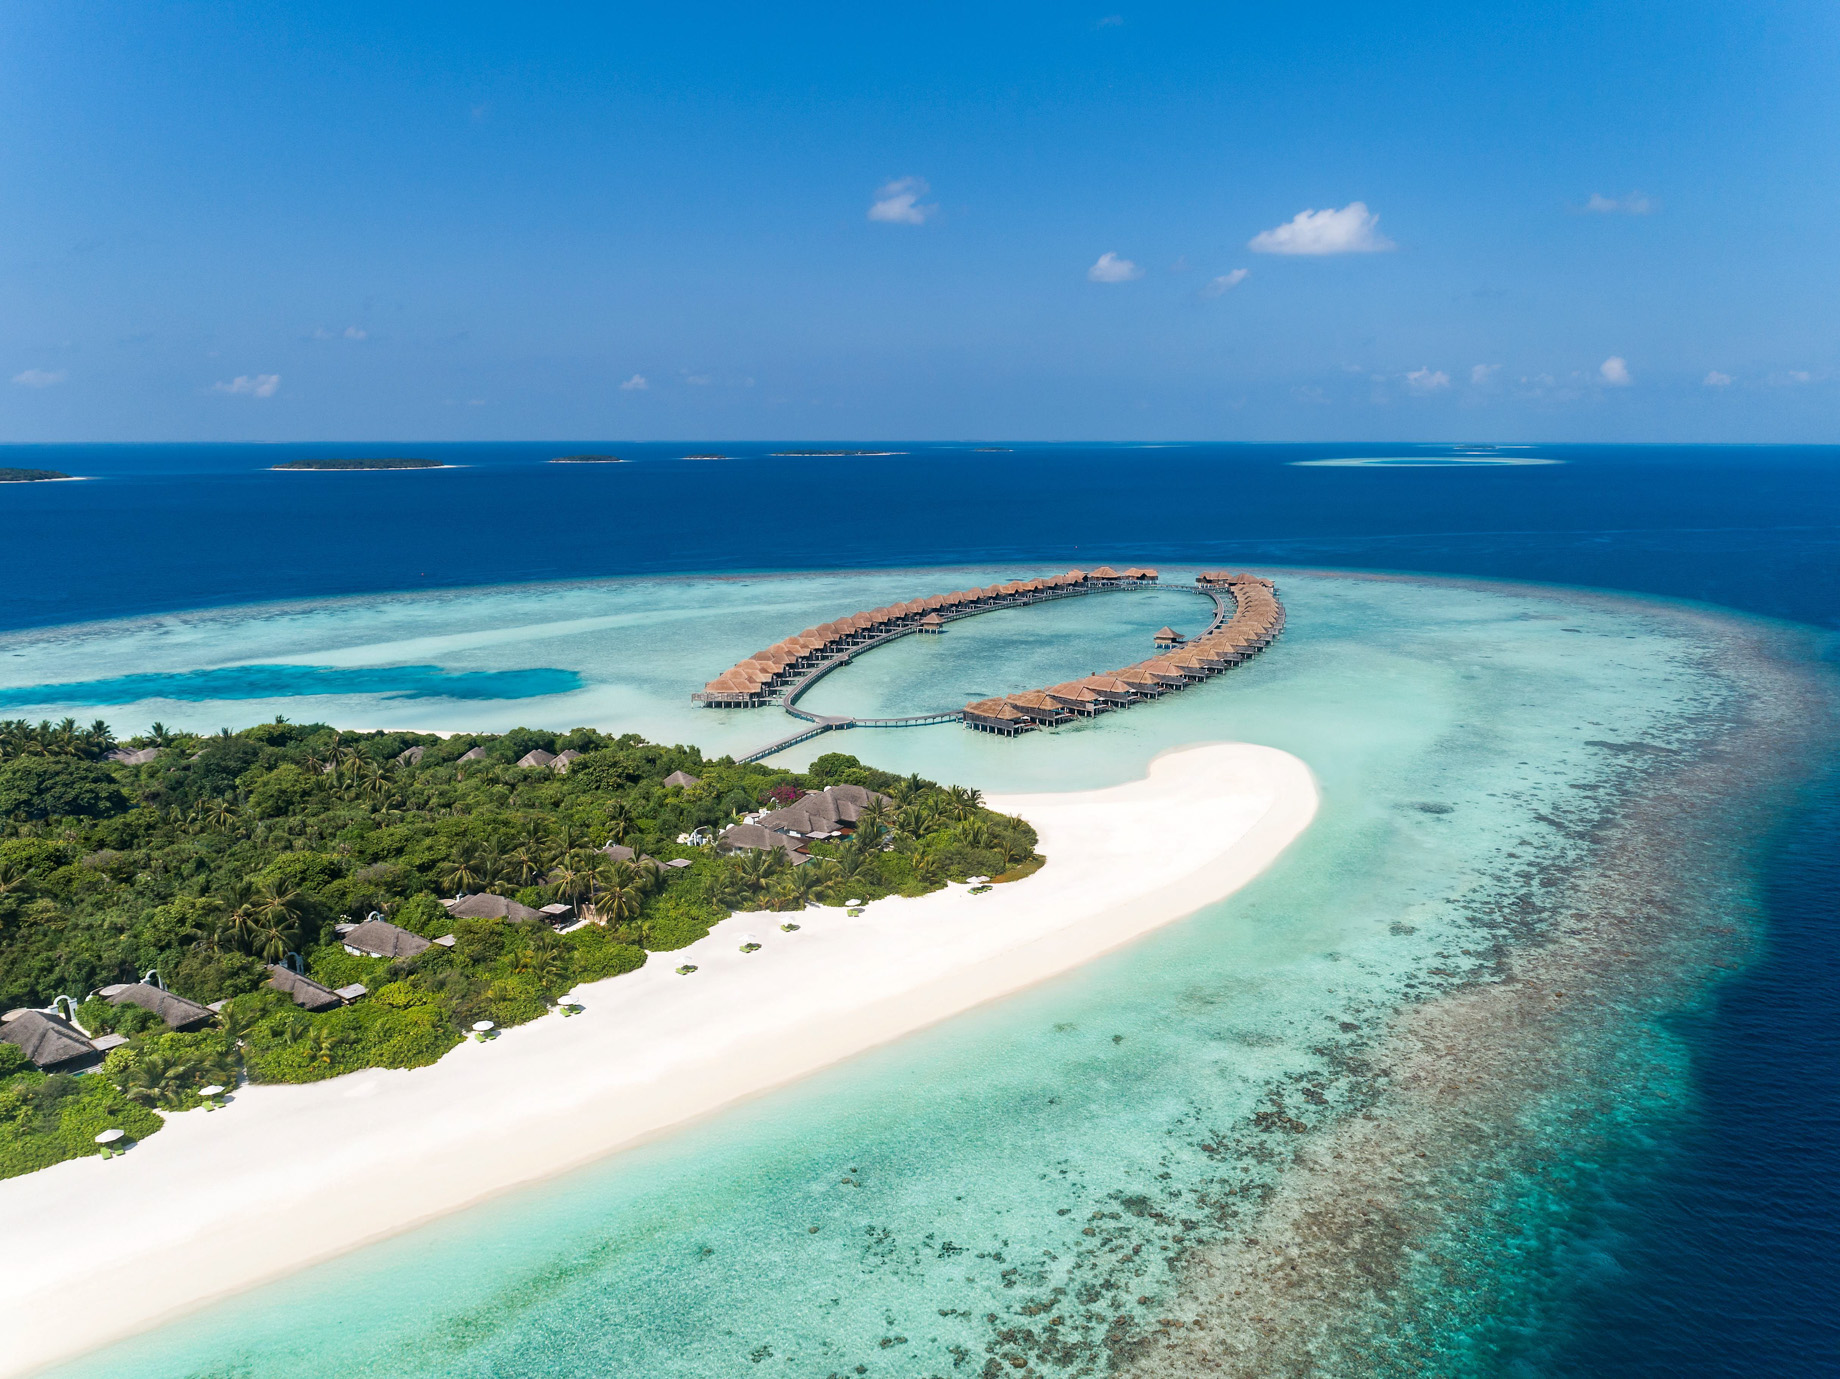 Anantara Kihavah Maldives Villas Resort – Baa Atoll, Maldives – Resort Beach Villas and Overwater Villa Aerial View